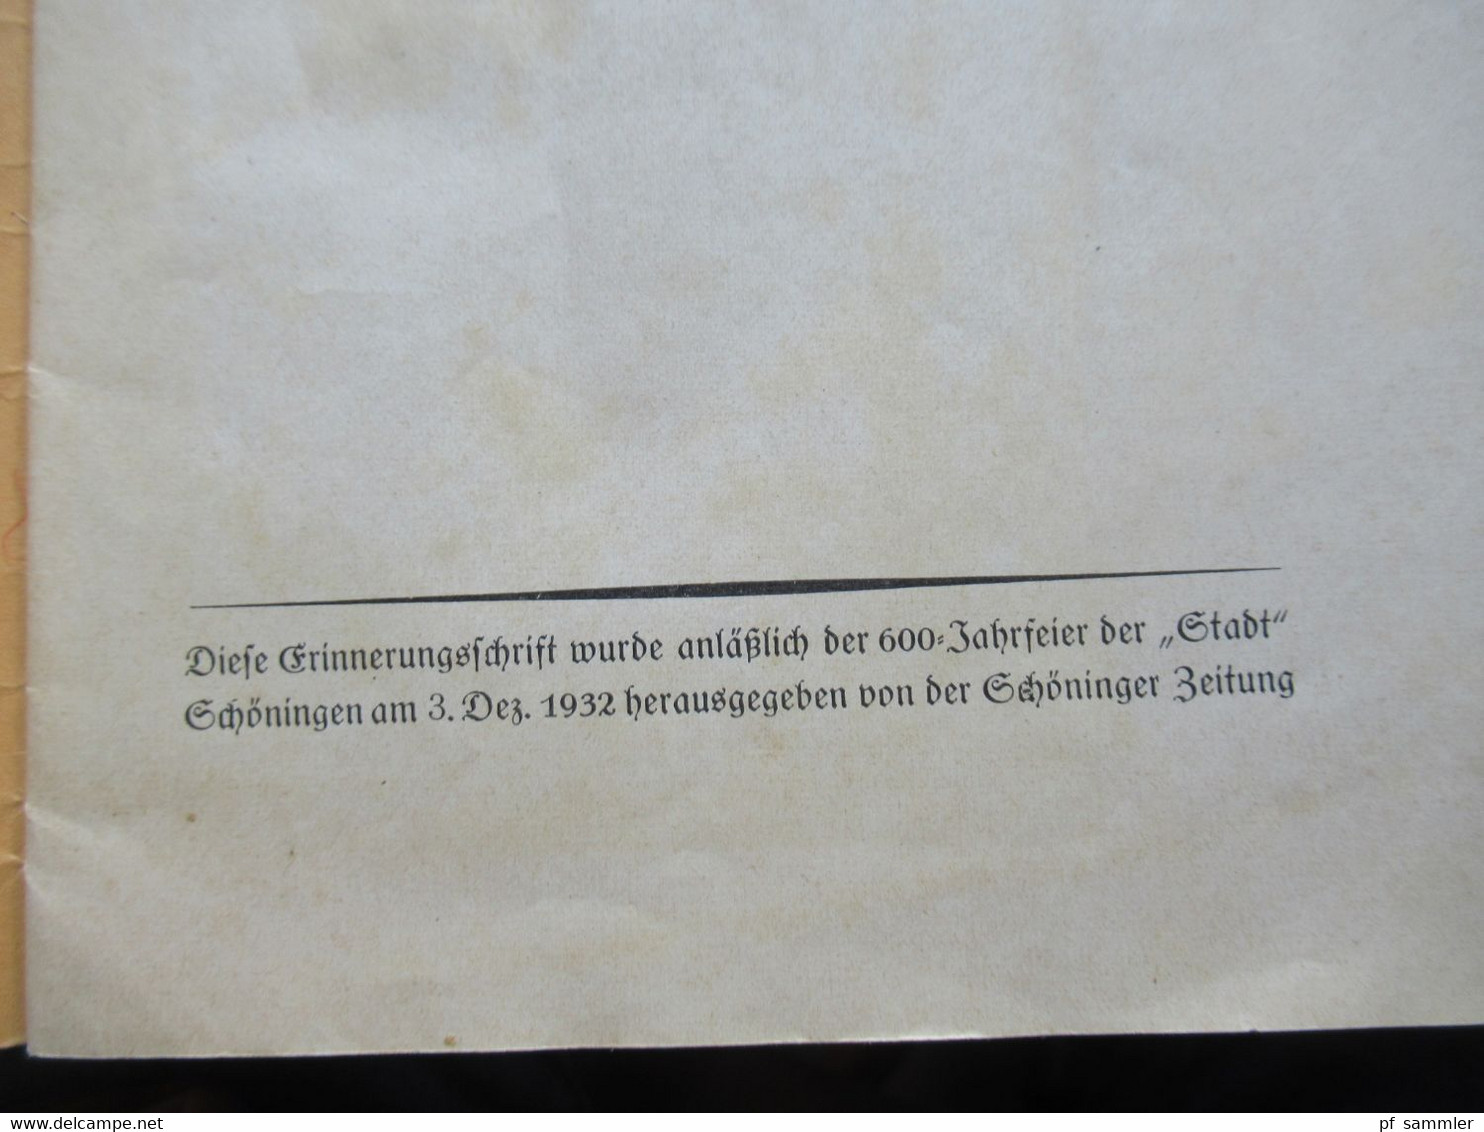 DR 1932 Erinnerungsschrift / Kleines Heft 600 Jahre Stadt Schöningen (Kreis Helmstedt) Herausgeber Schöninger Zeitung - Nedersaksen